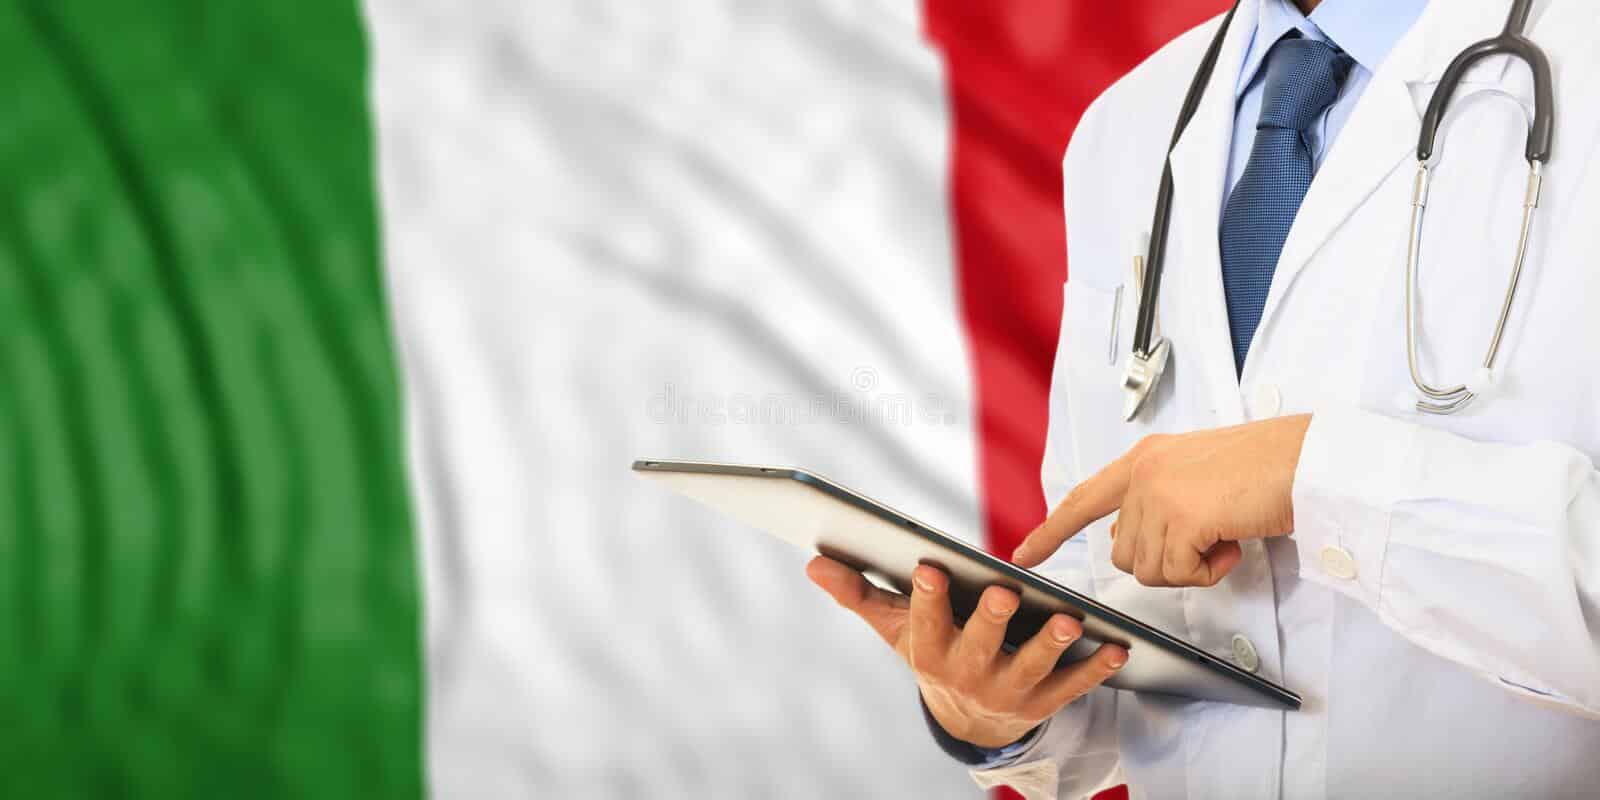 تحصیل پزشکی در ایتالیا به زبان ایتالیایی